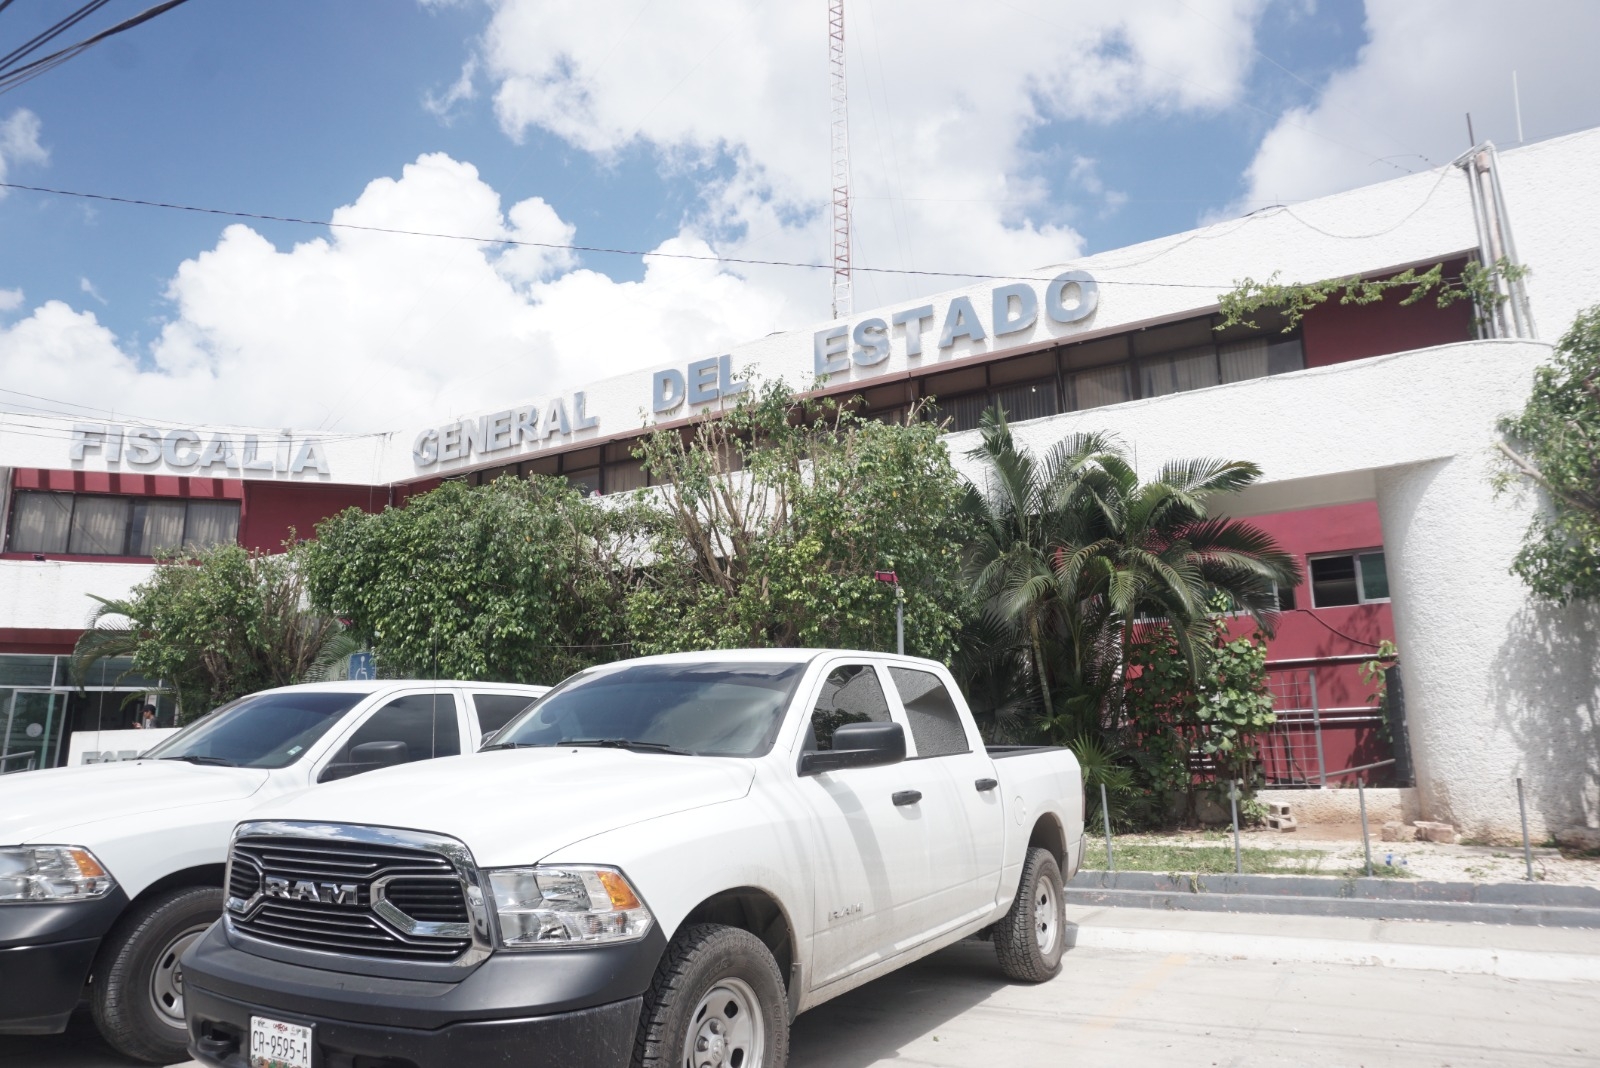 El hombre permanecerá en prisión en el Cereso de Kobén en Campeche